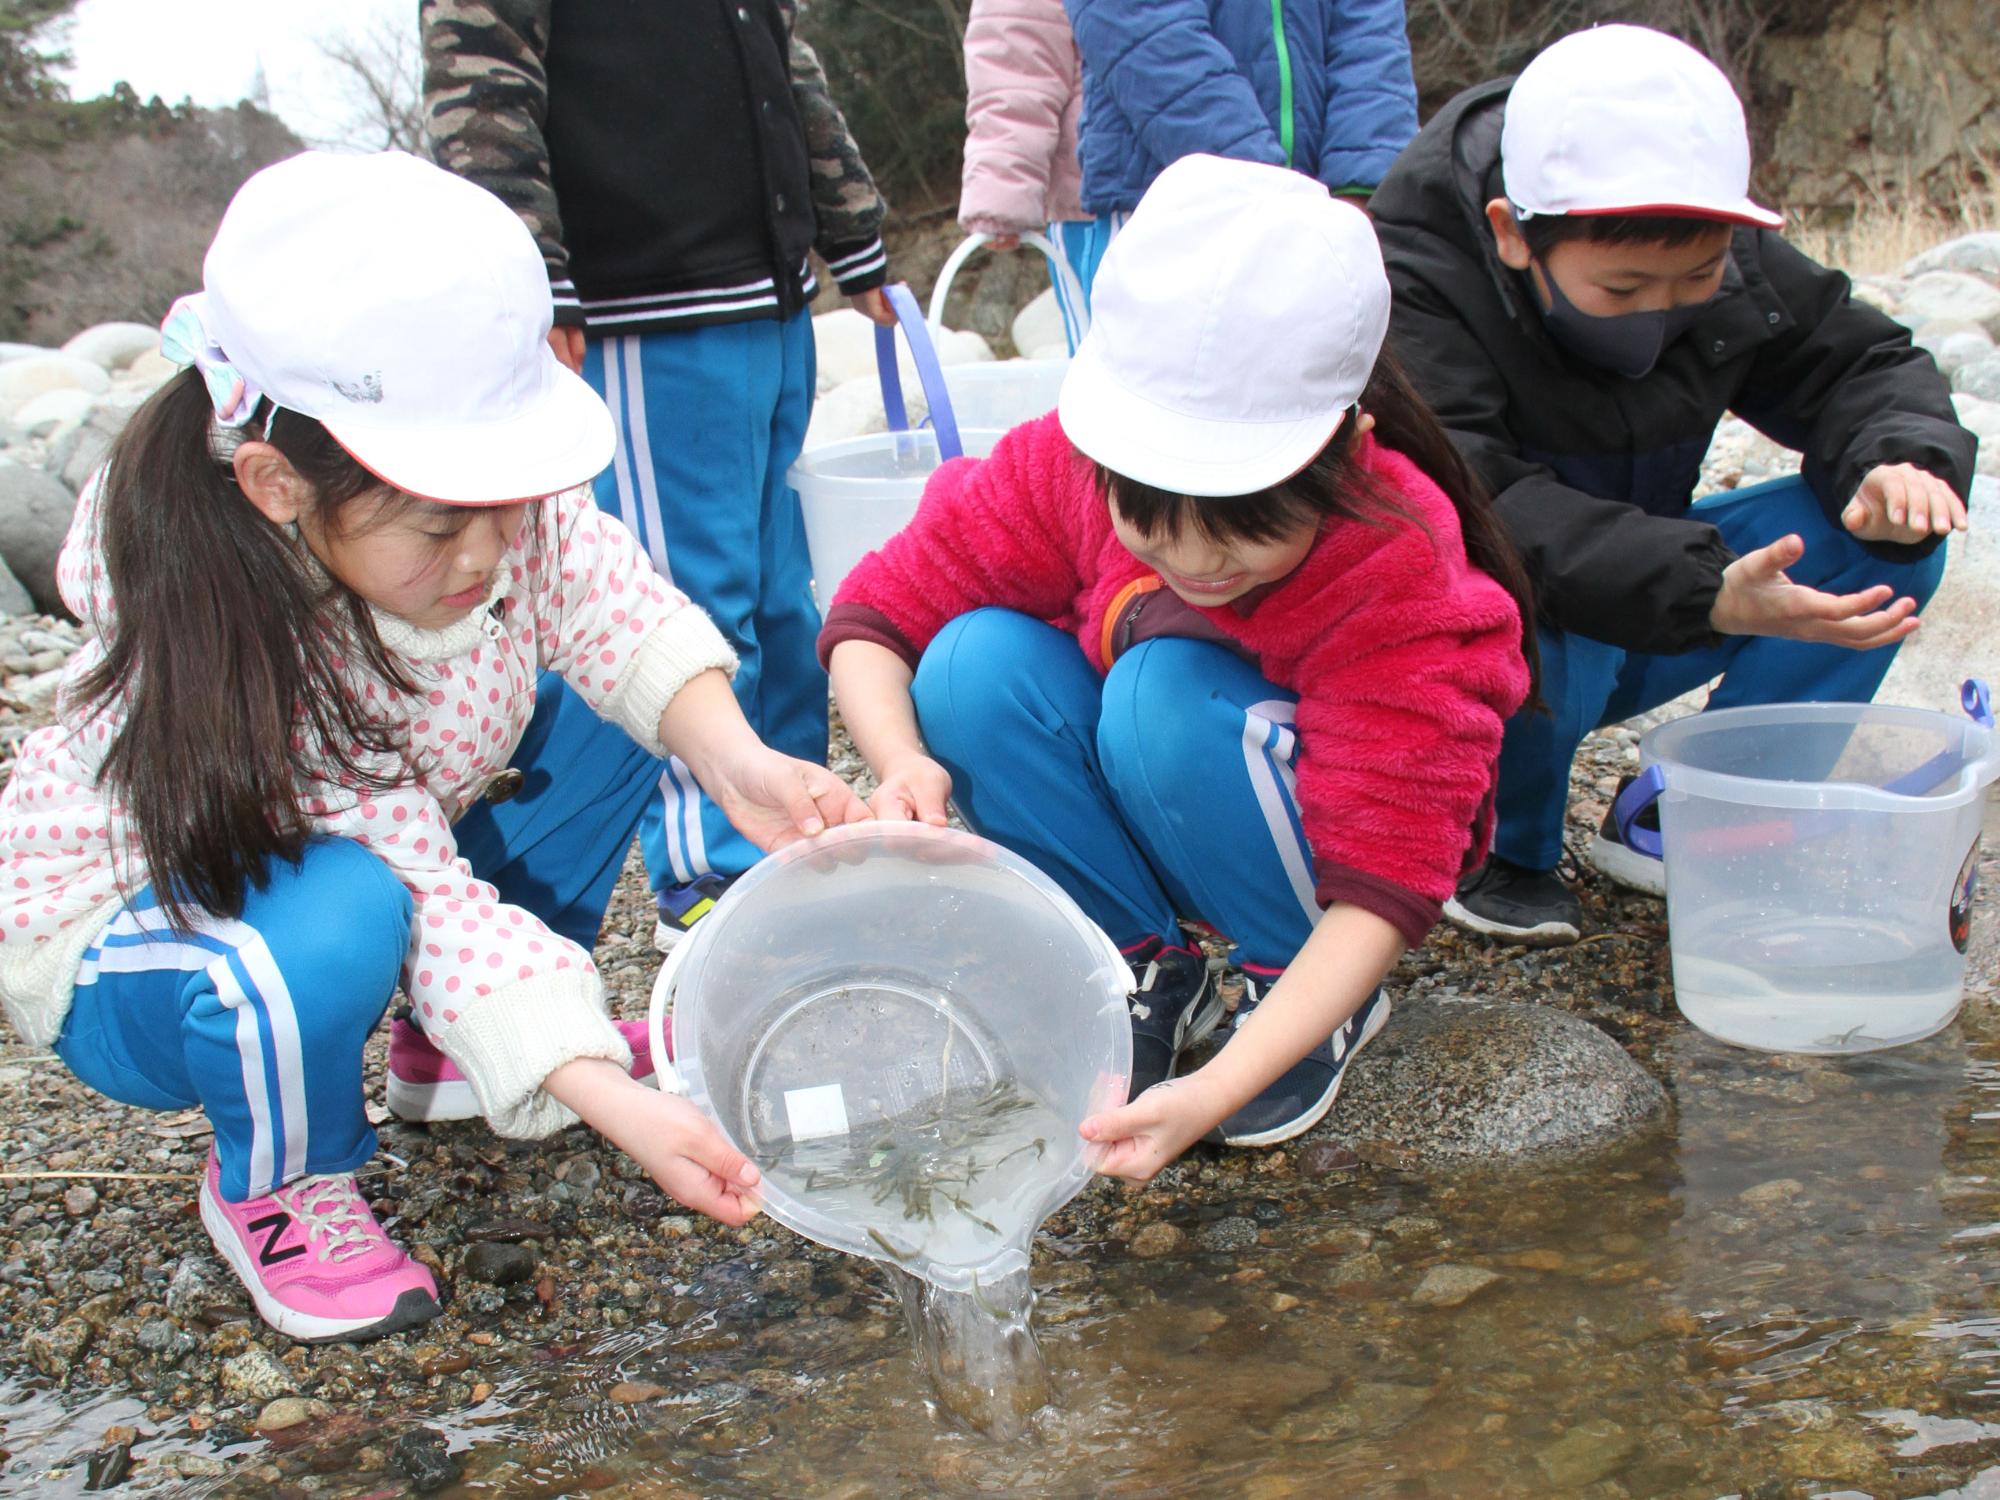 宇多川河川敷でサケ稚魚の放流を行う山上小学校の児童の様子